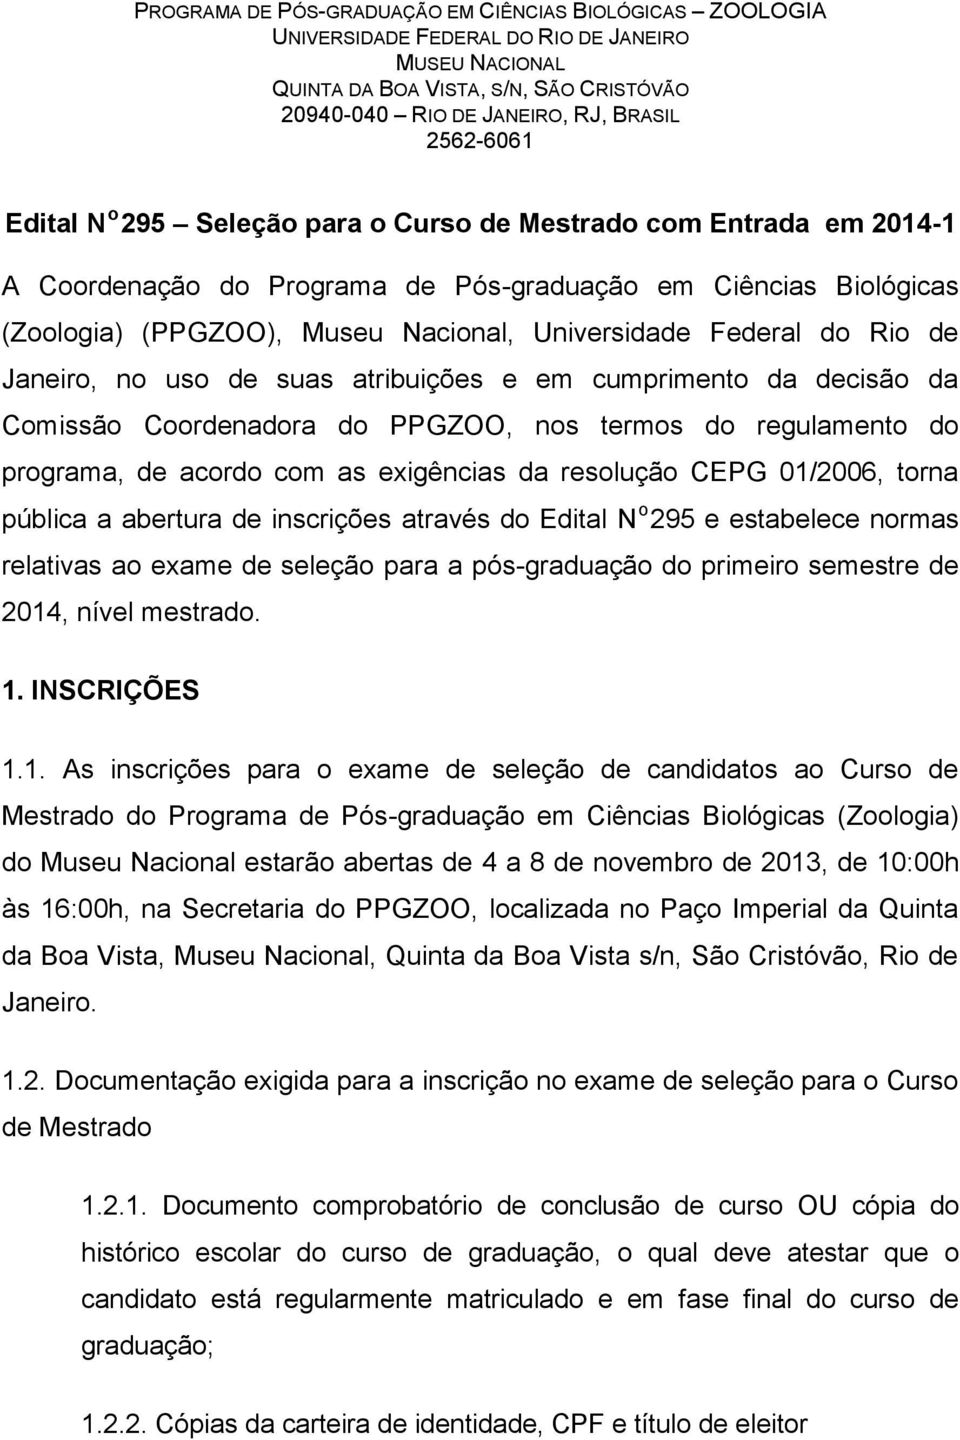 Rio de Janeiro, no uso de suas atribuições e em cumprimento da decisão da Comissão Coordenadora do PPGZOO, nos termos do regulamento do programa, de acordo com as exigências da resolução CEPG